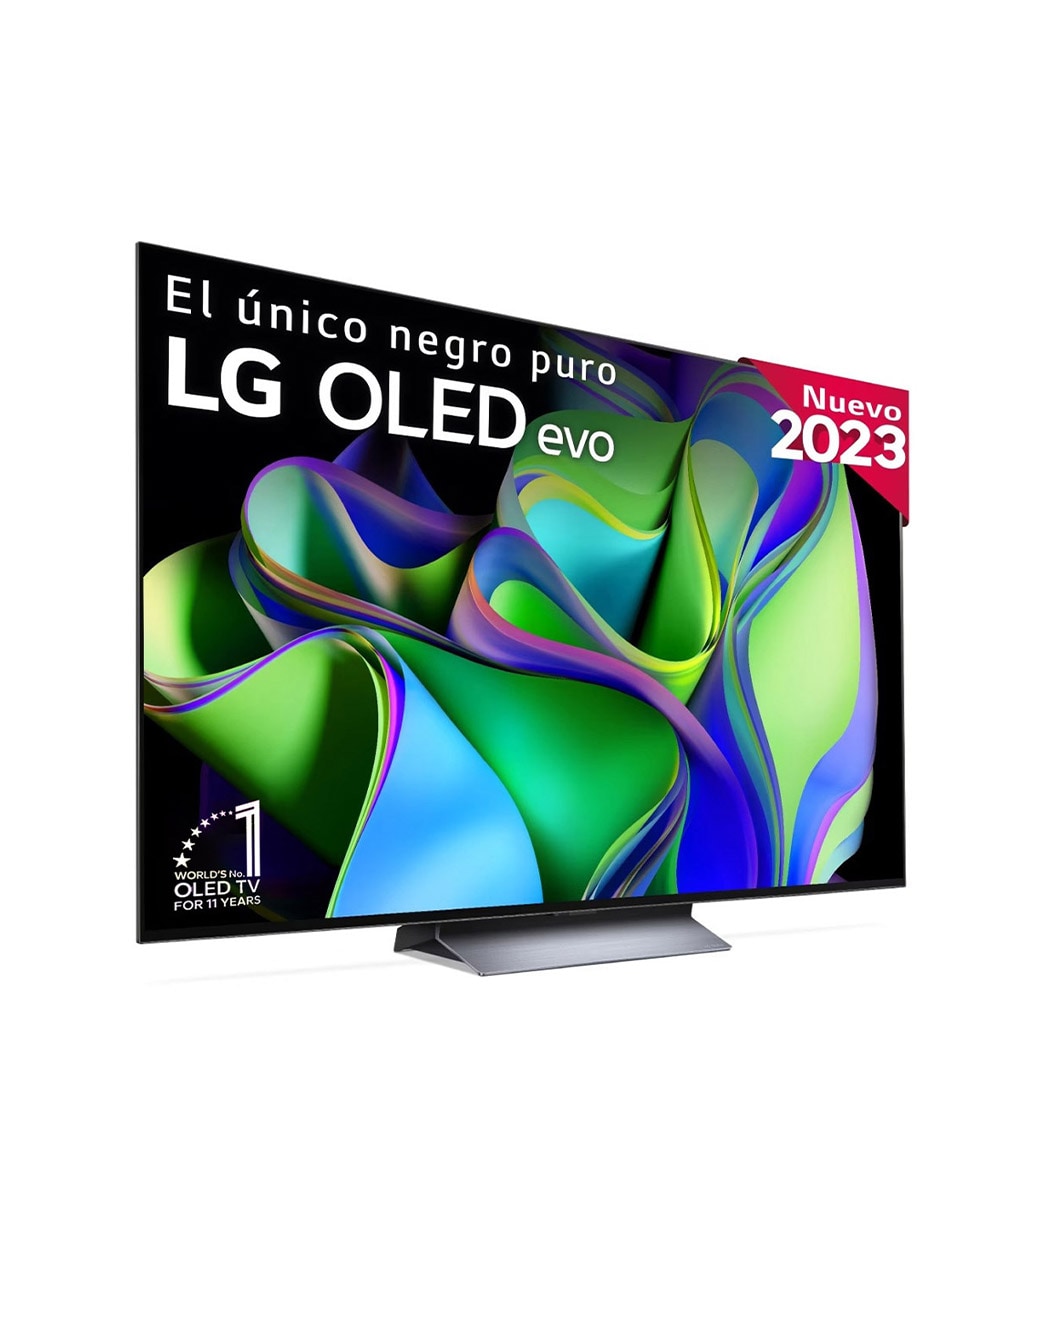 LG Televisor inteligente de pantalla plana con procesador OLED evo 4K de 65  pulgadas serie C3 para juegos con control remoto mágico alimentado por IA